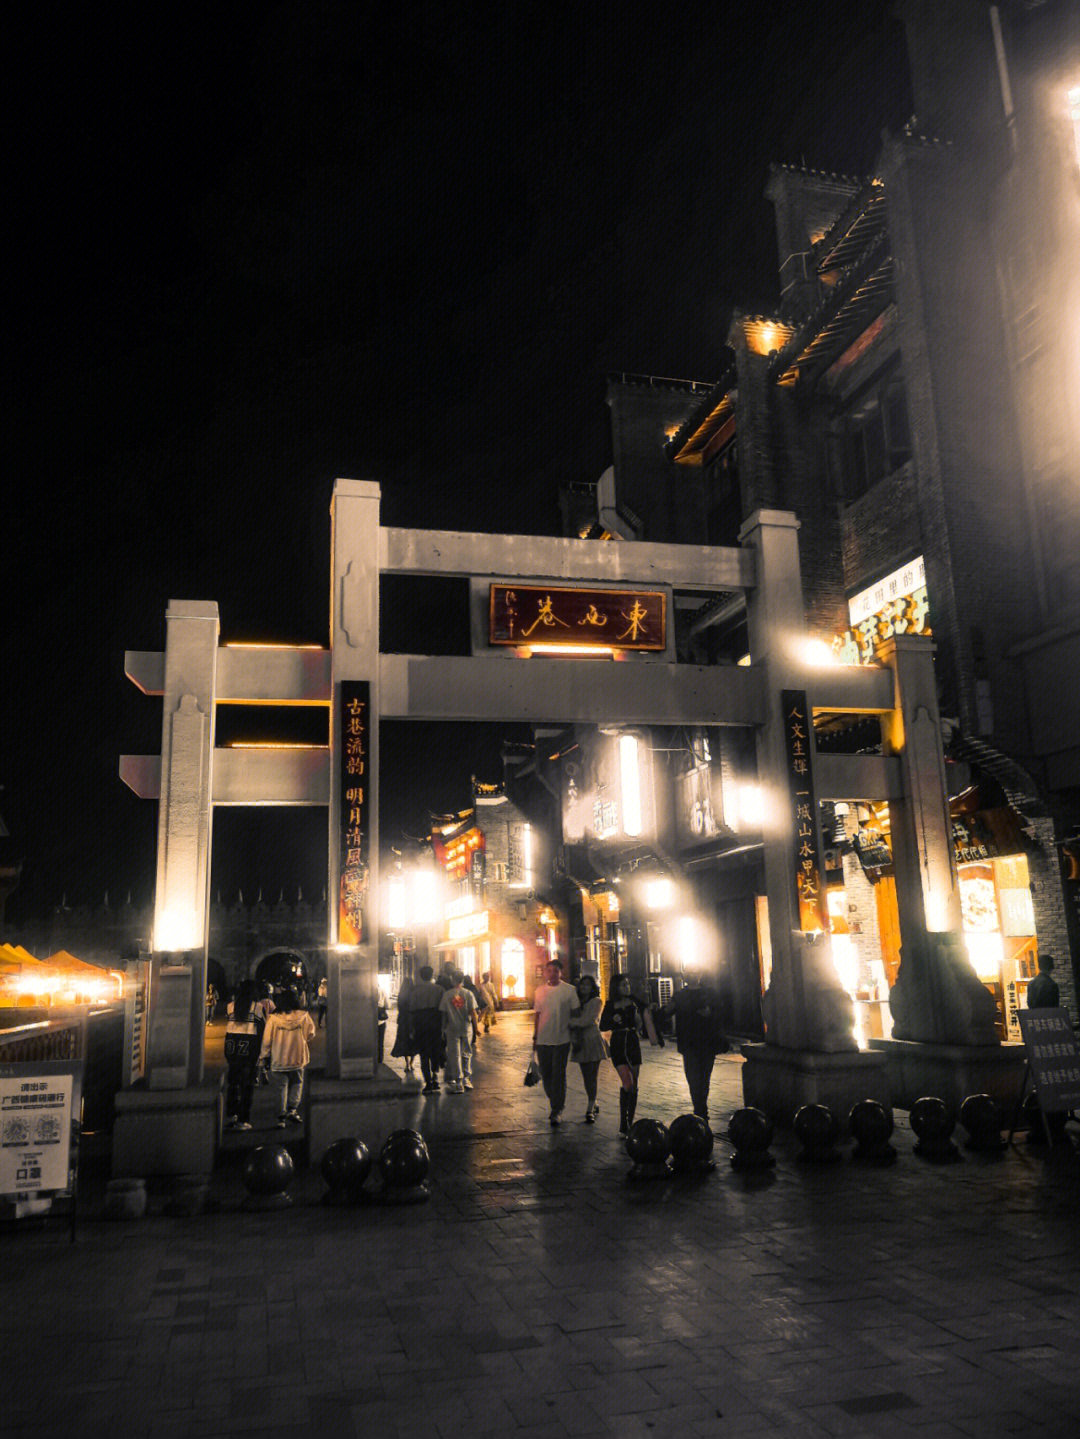 靖江站巷子的图片